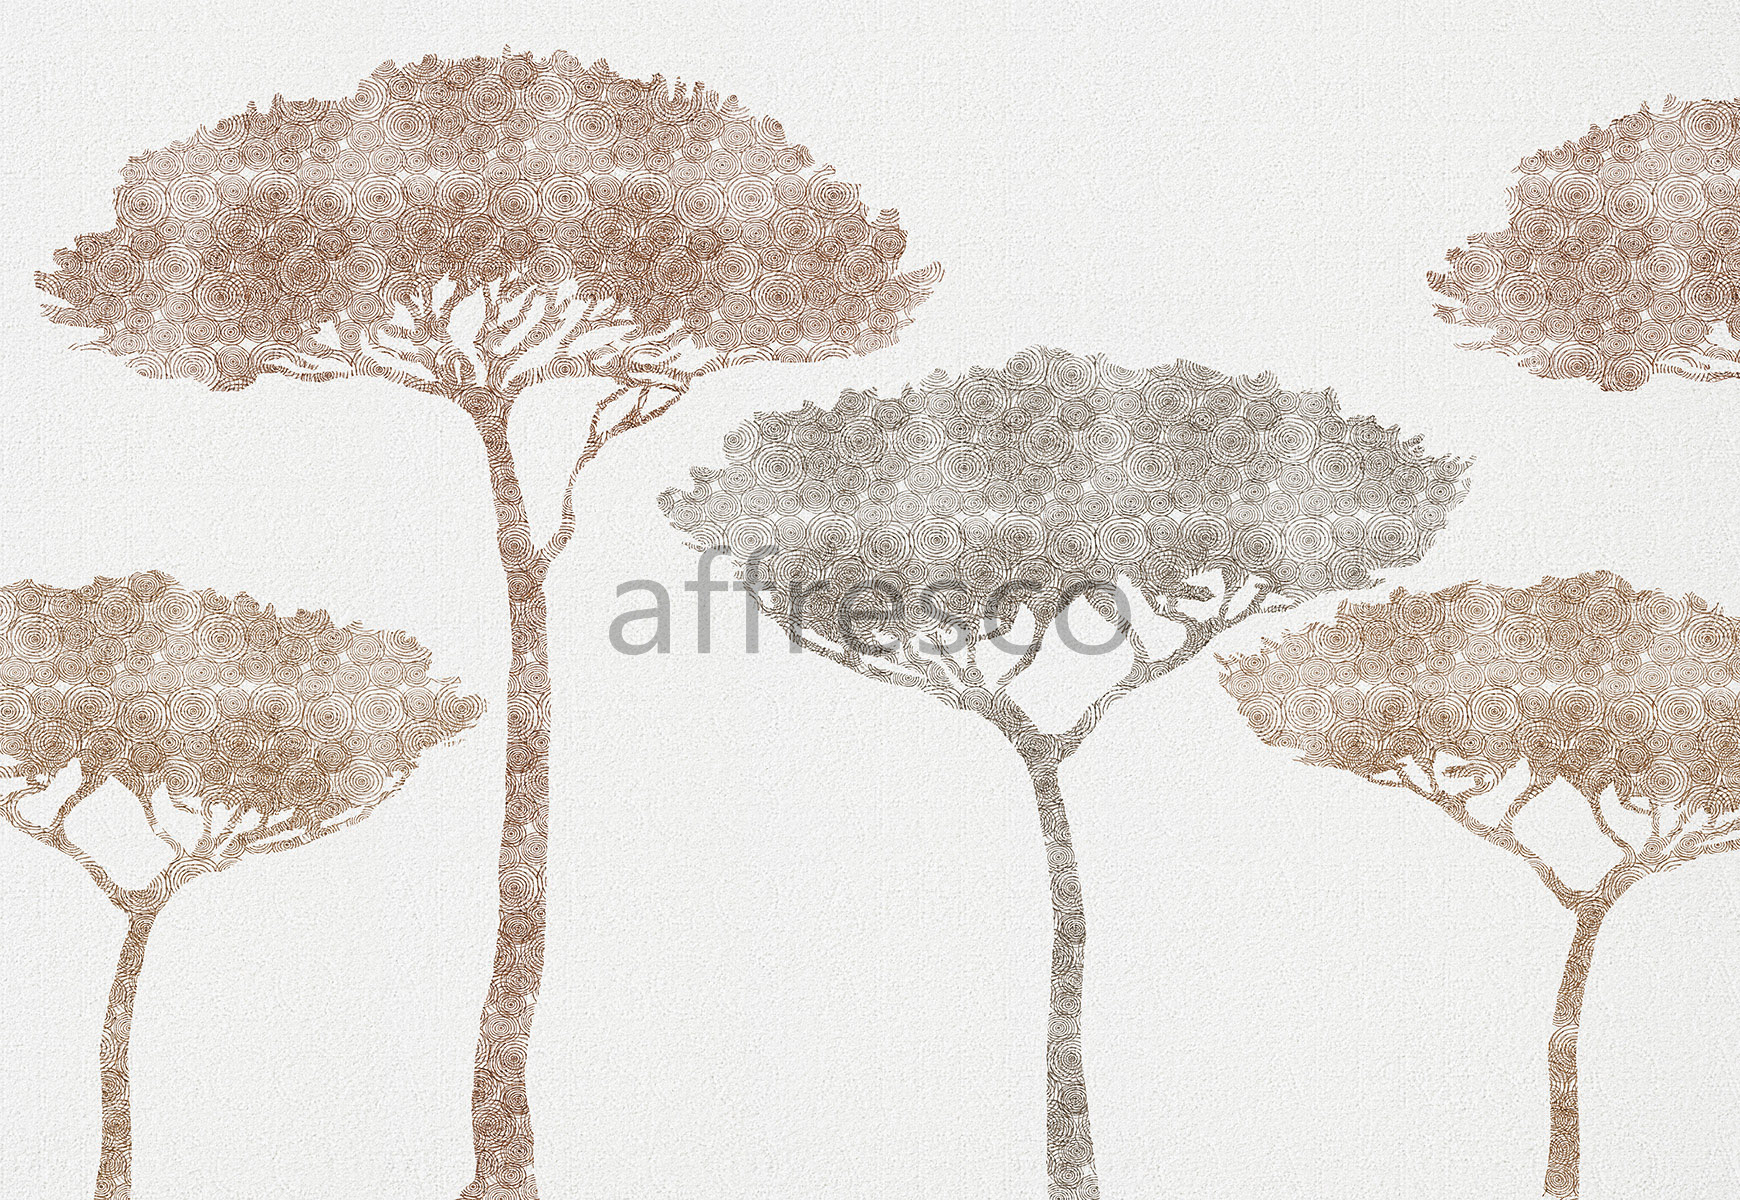 ID135772 | Nature | Большие деревья | Affresco Factory